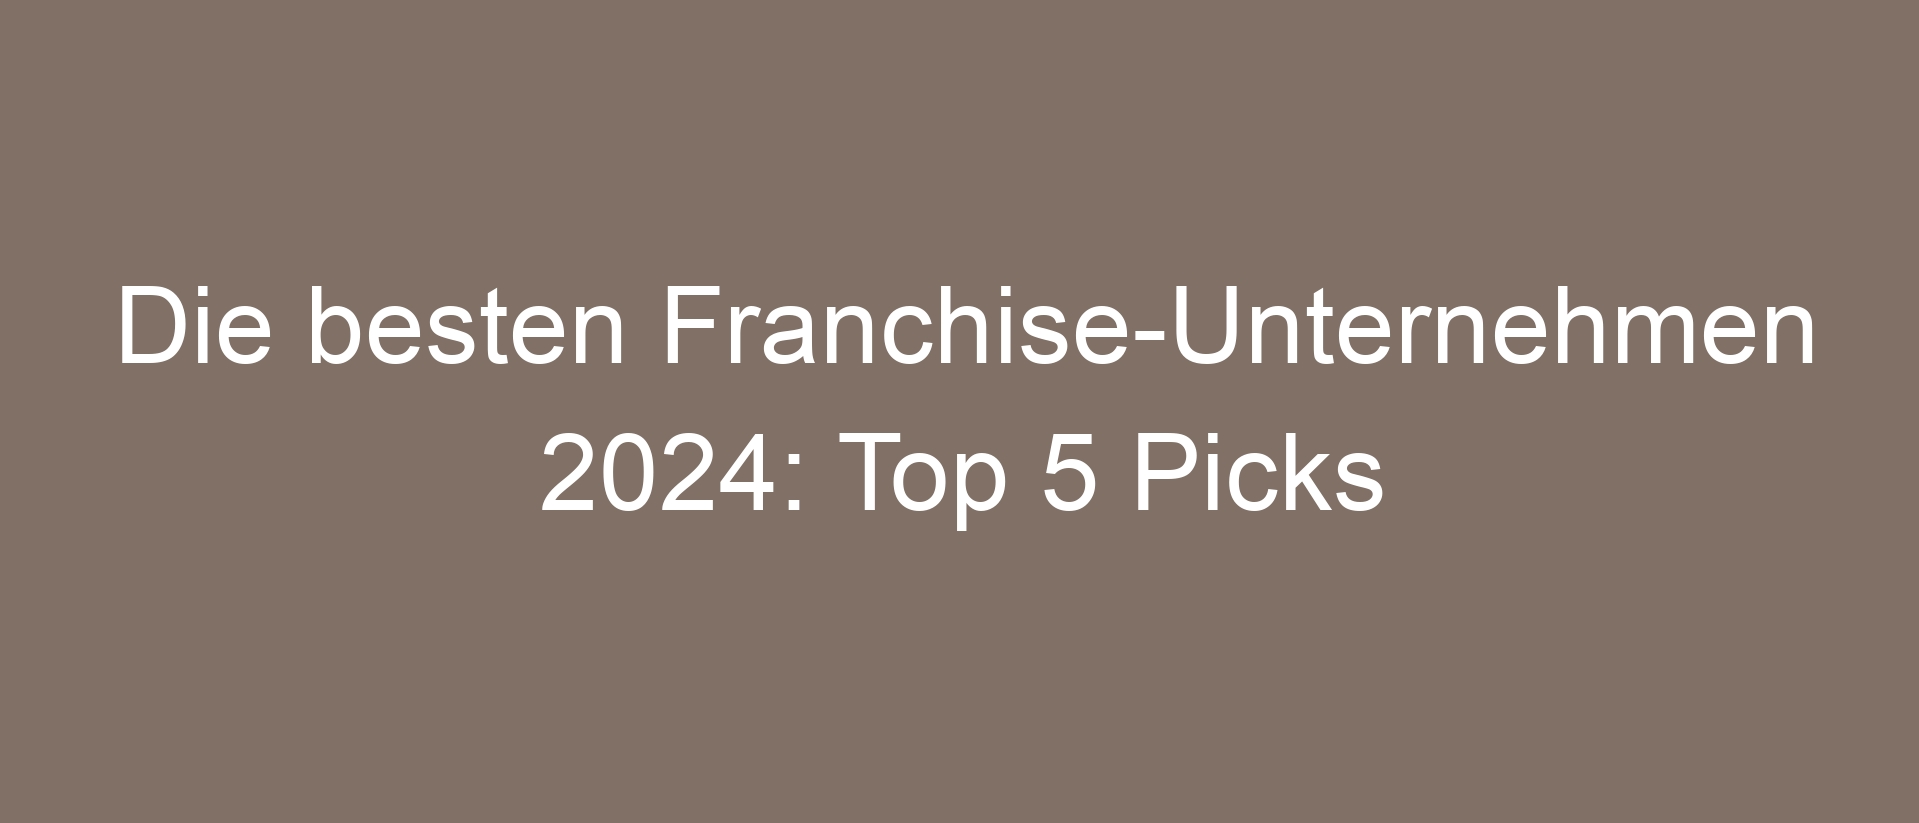 Die besten Franchise-Unternehmen 2024: Top 5 Picks